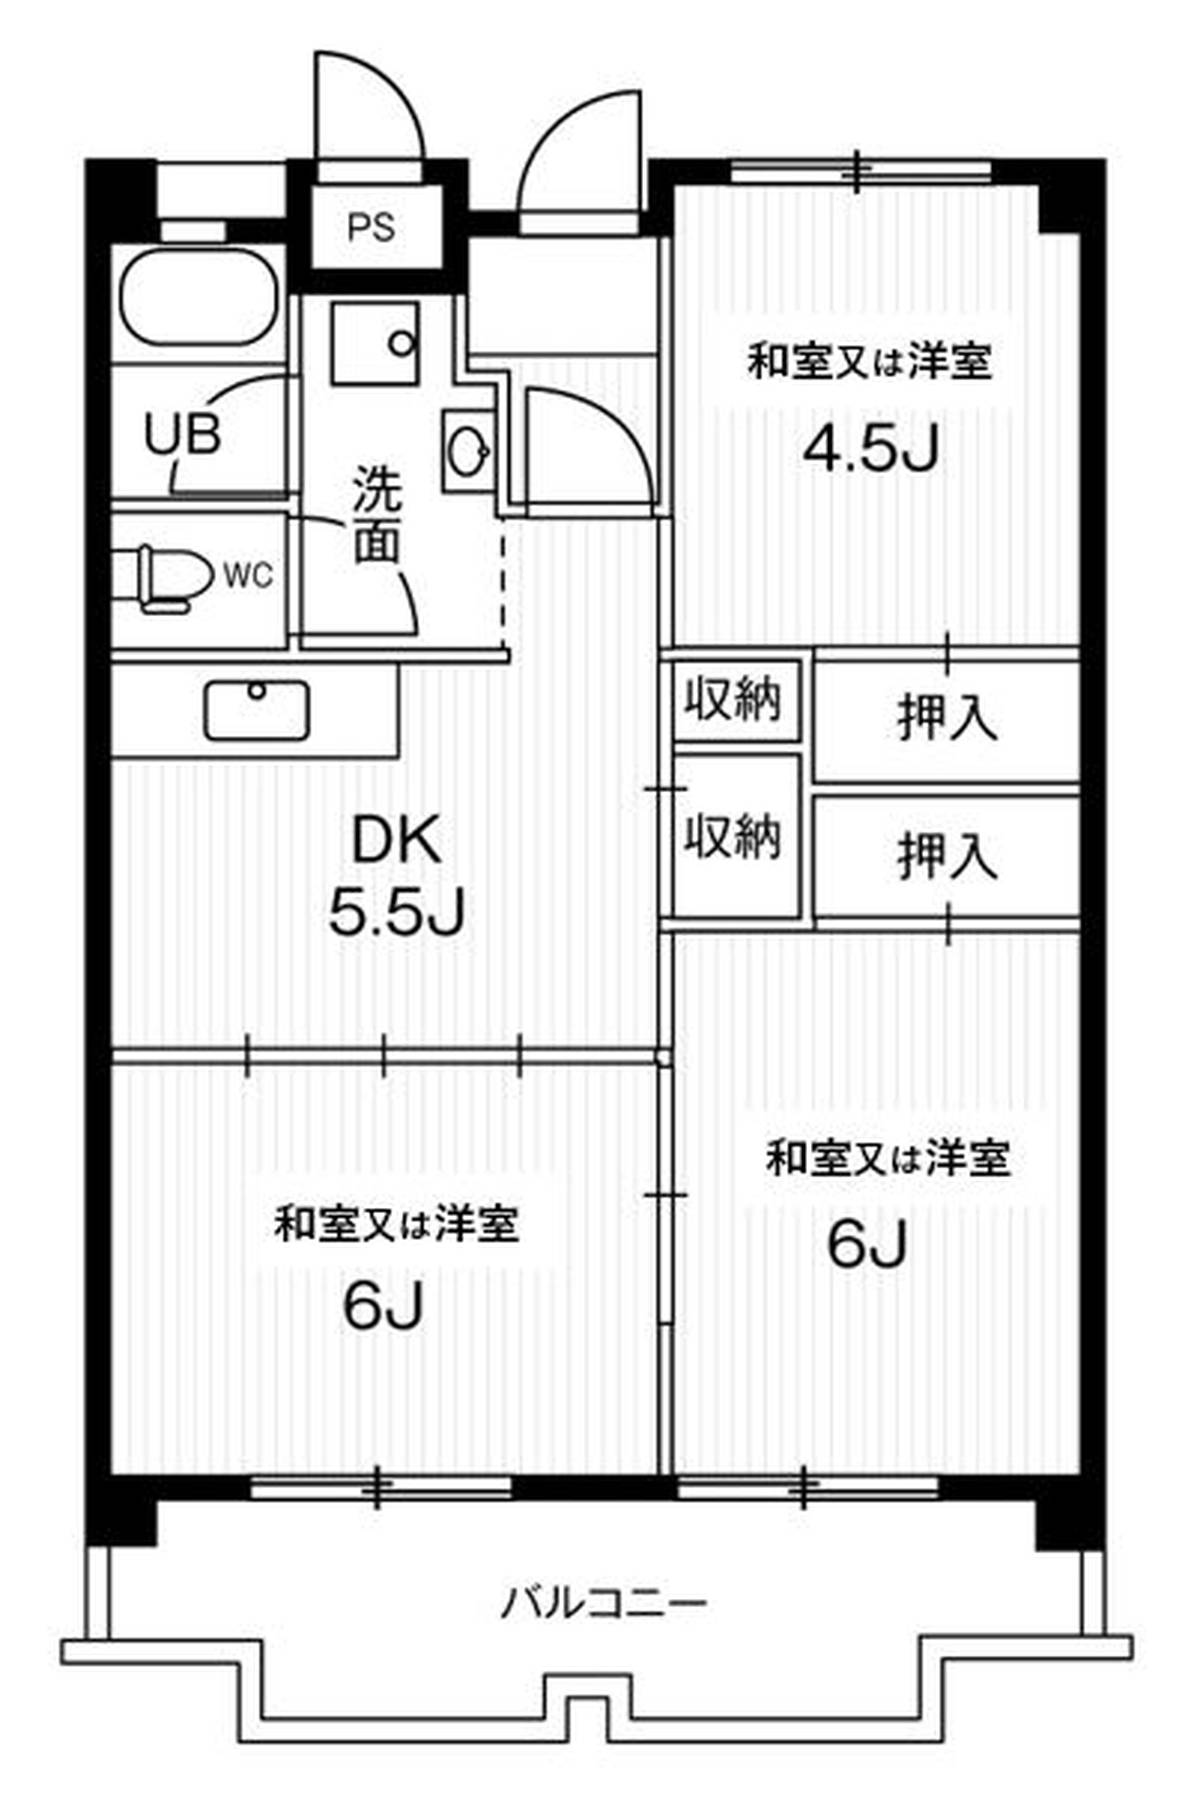 2LDK floorplan of Village House Ichinomiya Tower in Ichinomiya-shi